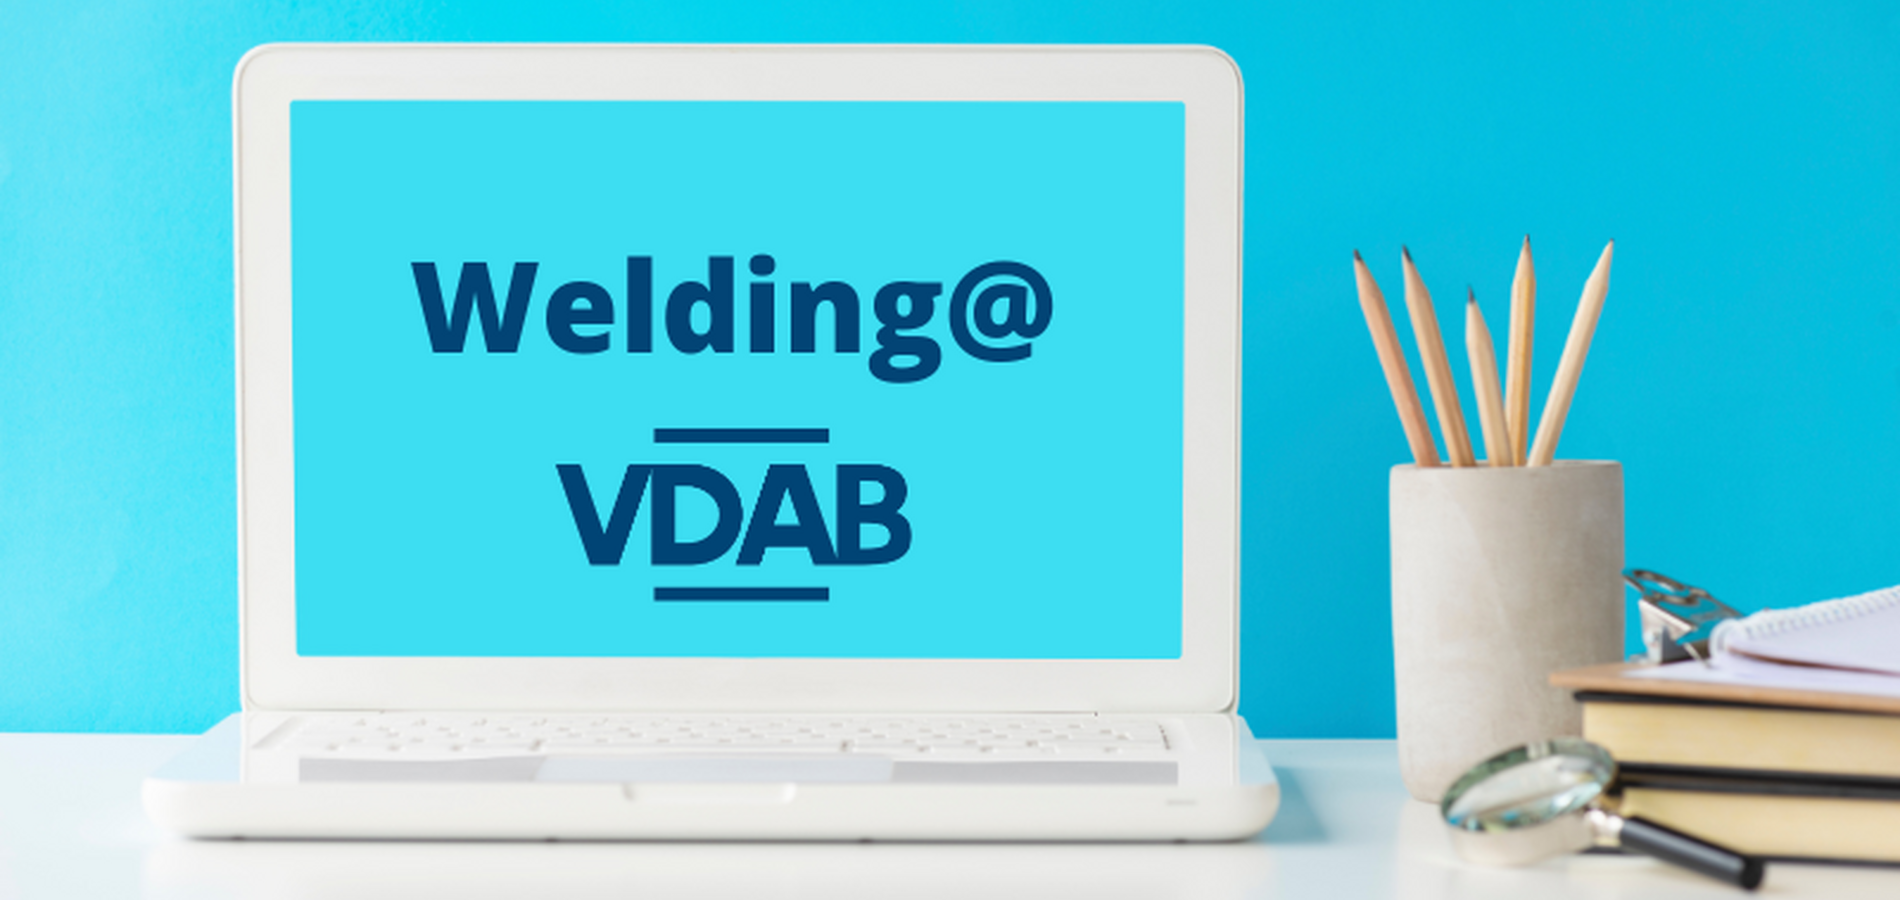 VDAB E-leren: welding@